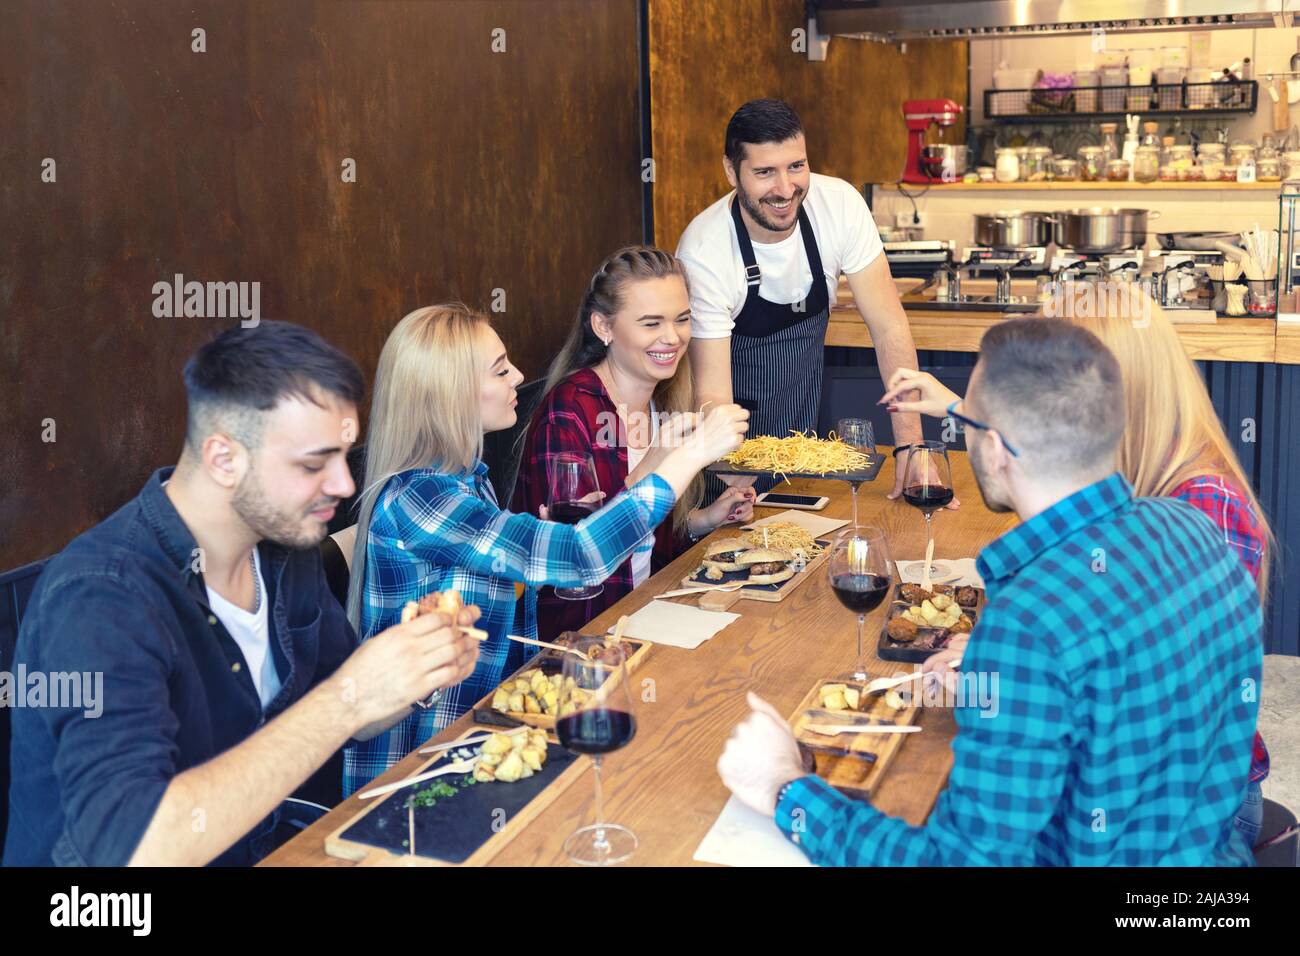 Feliz propietario de negocio sirviendo comida a un grupo de jóvenes amigos sonrientes en familia pequeña taberna restaurante Foto de stock